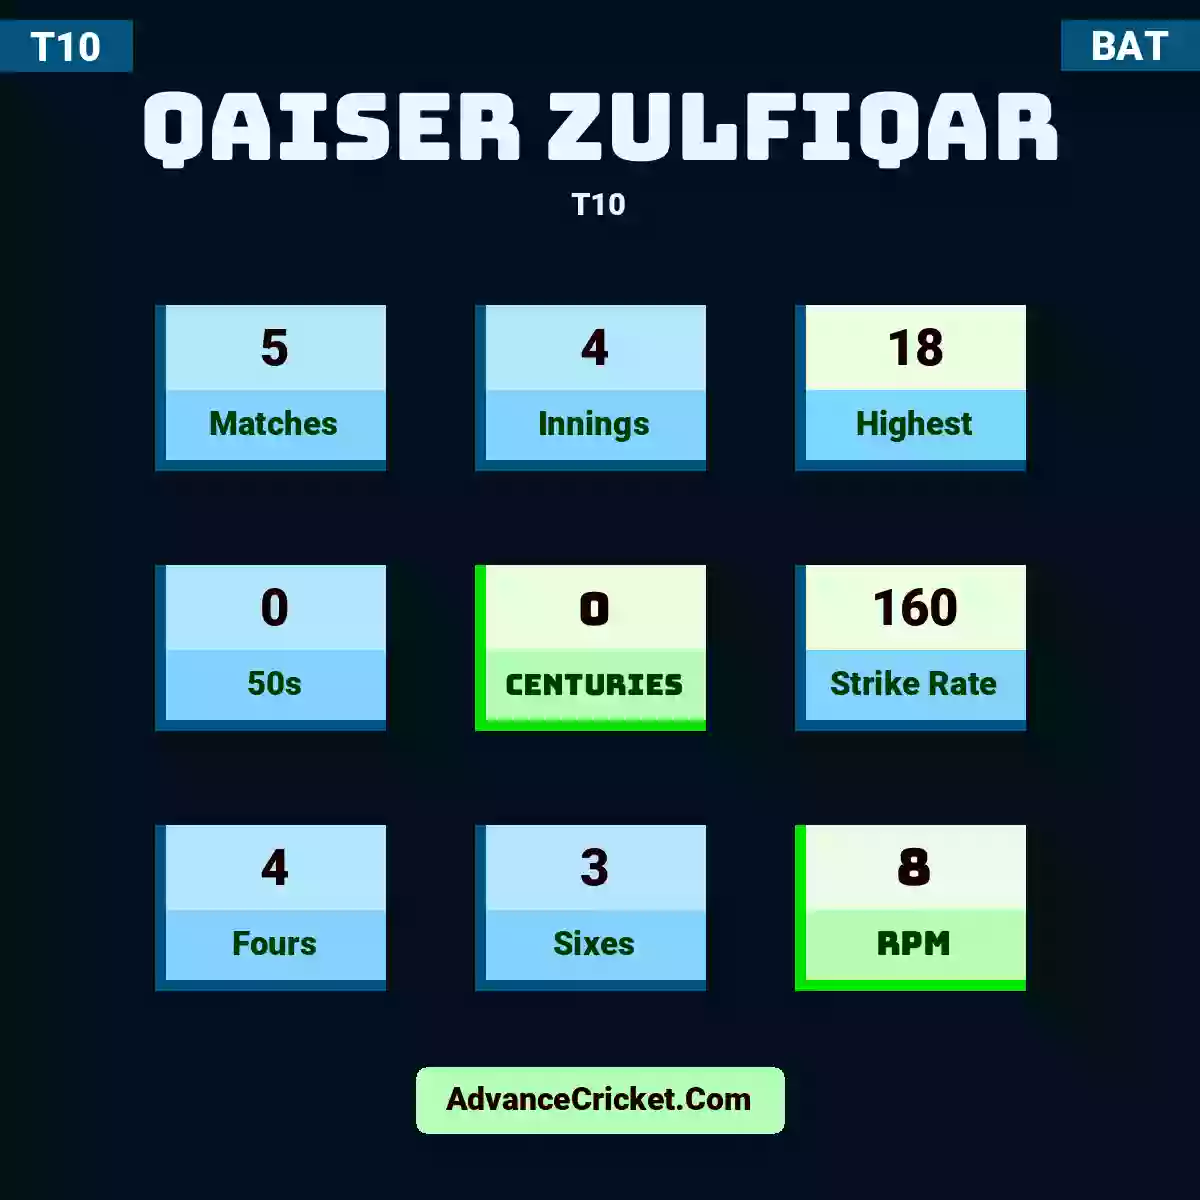 Qaiser Zulfiqar T10 , Qaiser Zulfiqar played 5 matches, scored 18 runs as highest, 0 half-centuries, and 0 centuries, with a strike rate of 160. Q.Zulfiqar hit 4 fours and 3 sixes, with an RPM of 8.